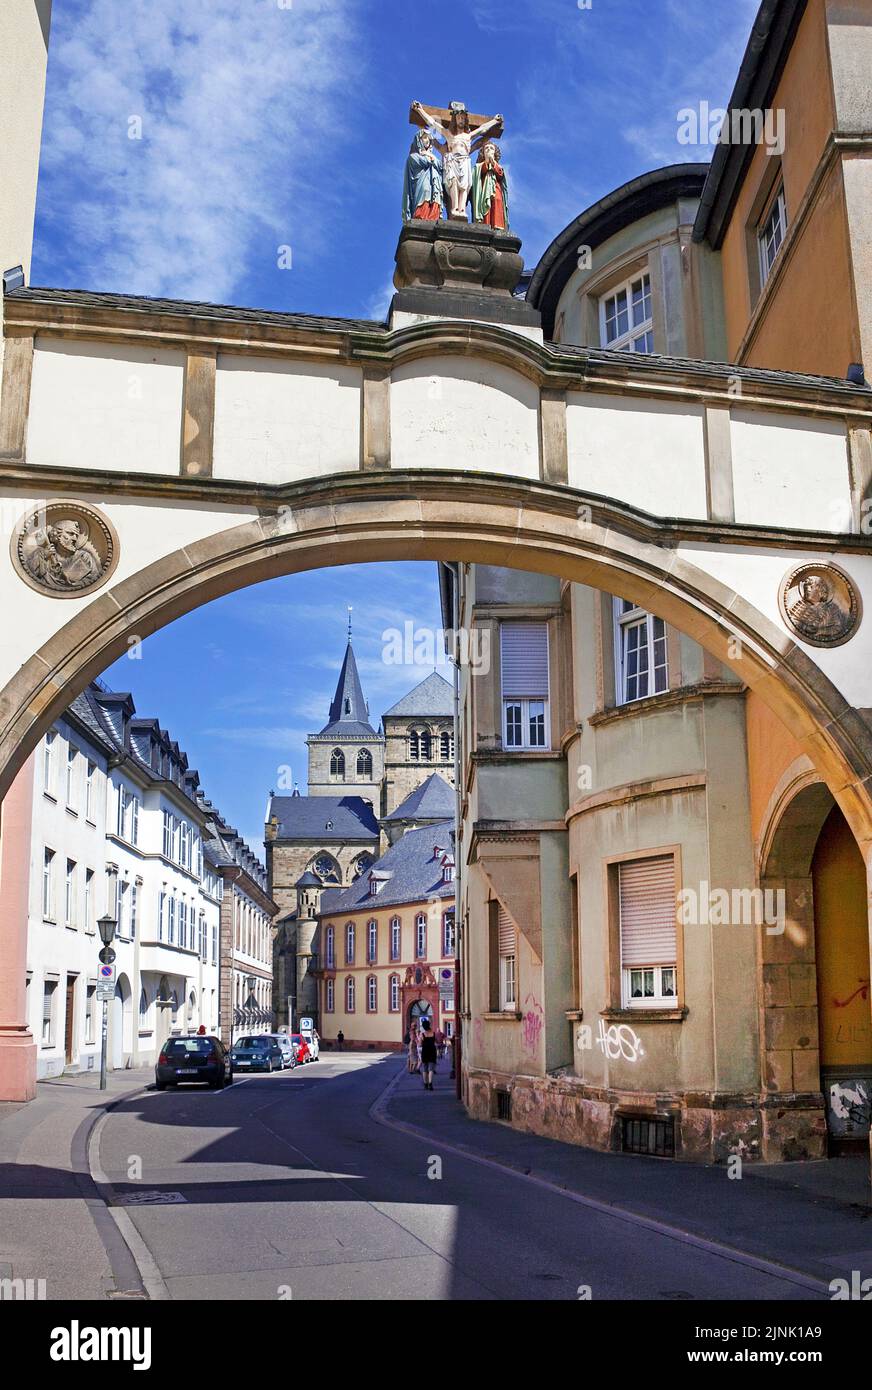 Vue de la rue Liebfrauen à la cathédrale de Trèves Saint Peter Dome, site classé au patrimoine mondial de l'UNESCO, Trèves, Rhénanie-Palatinat, Allemagne, Europe Banque D'Images